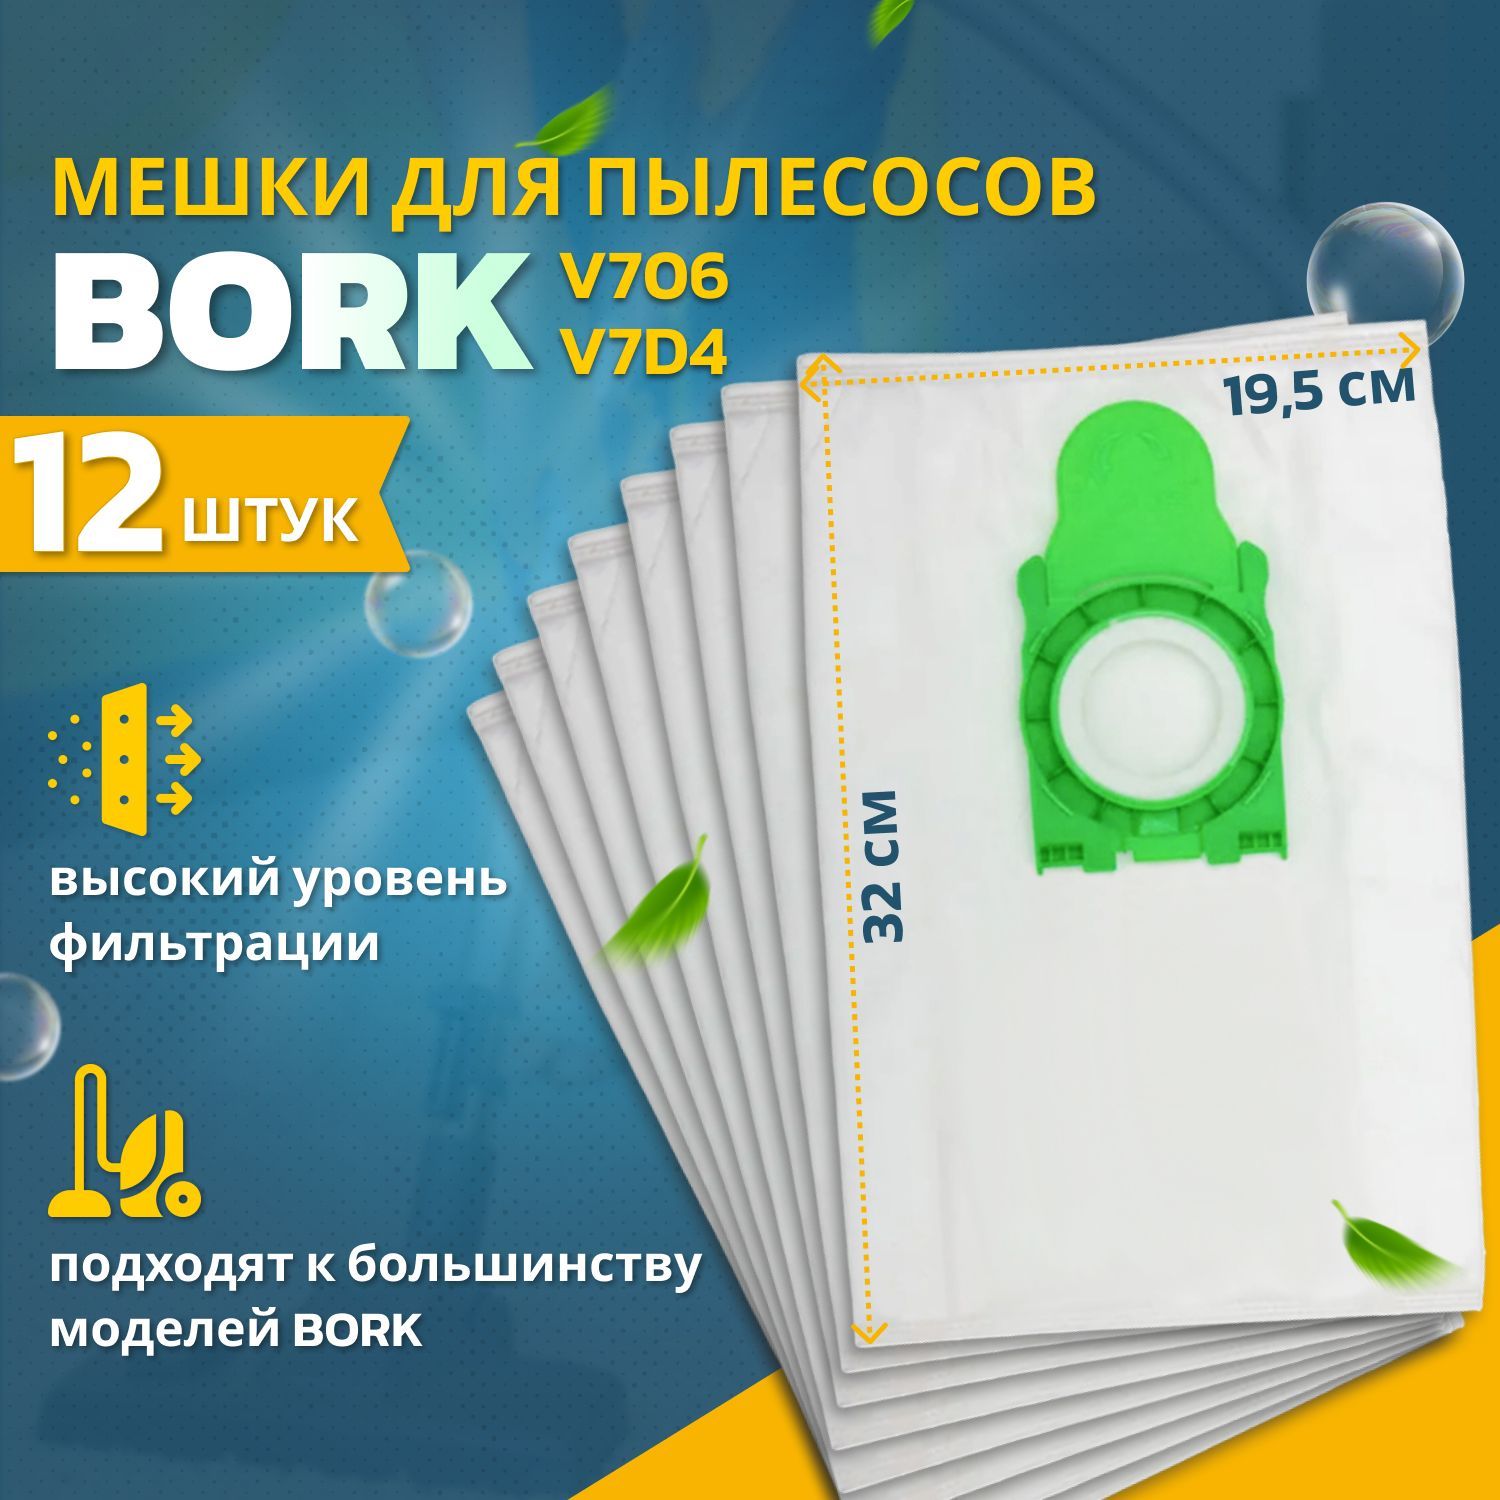 Bork C700